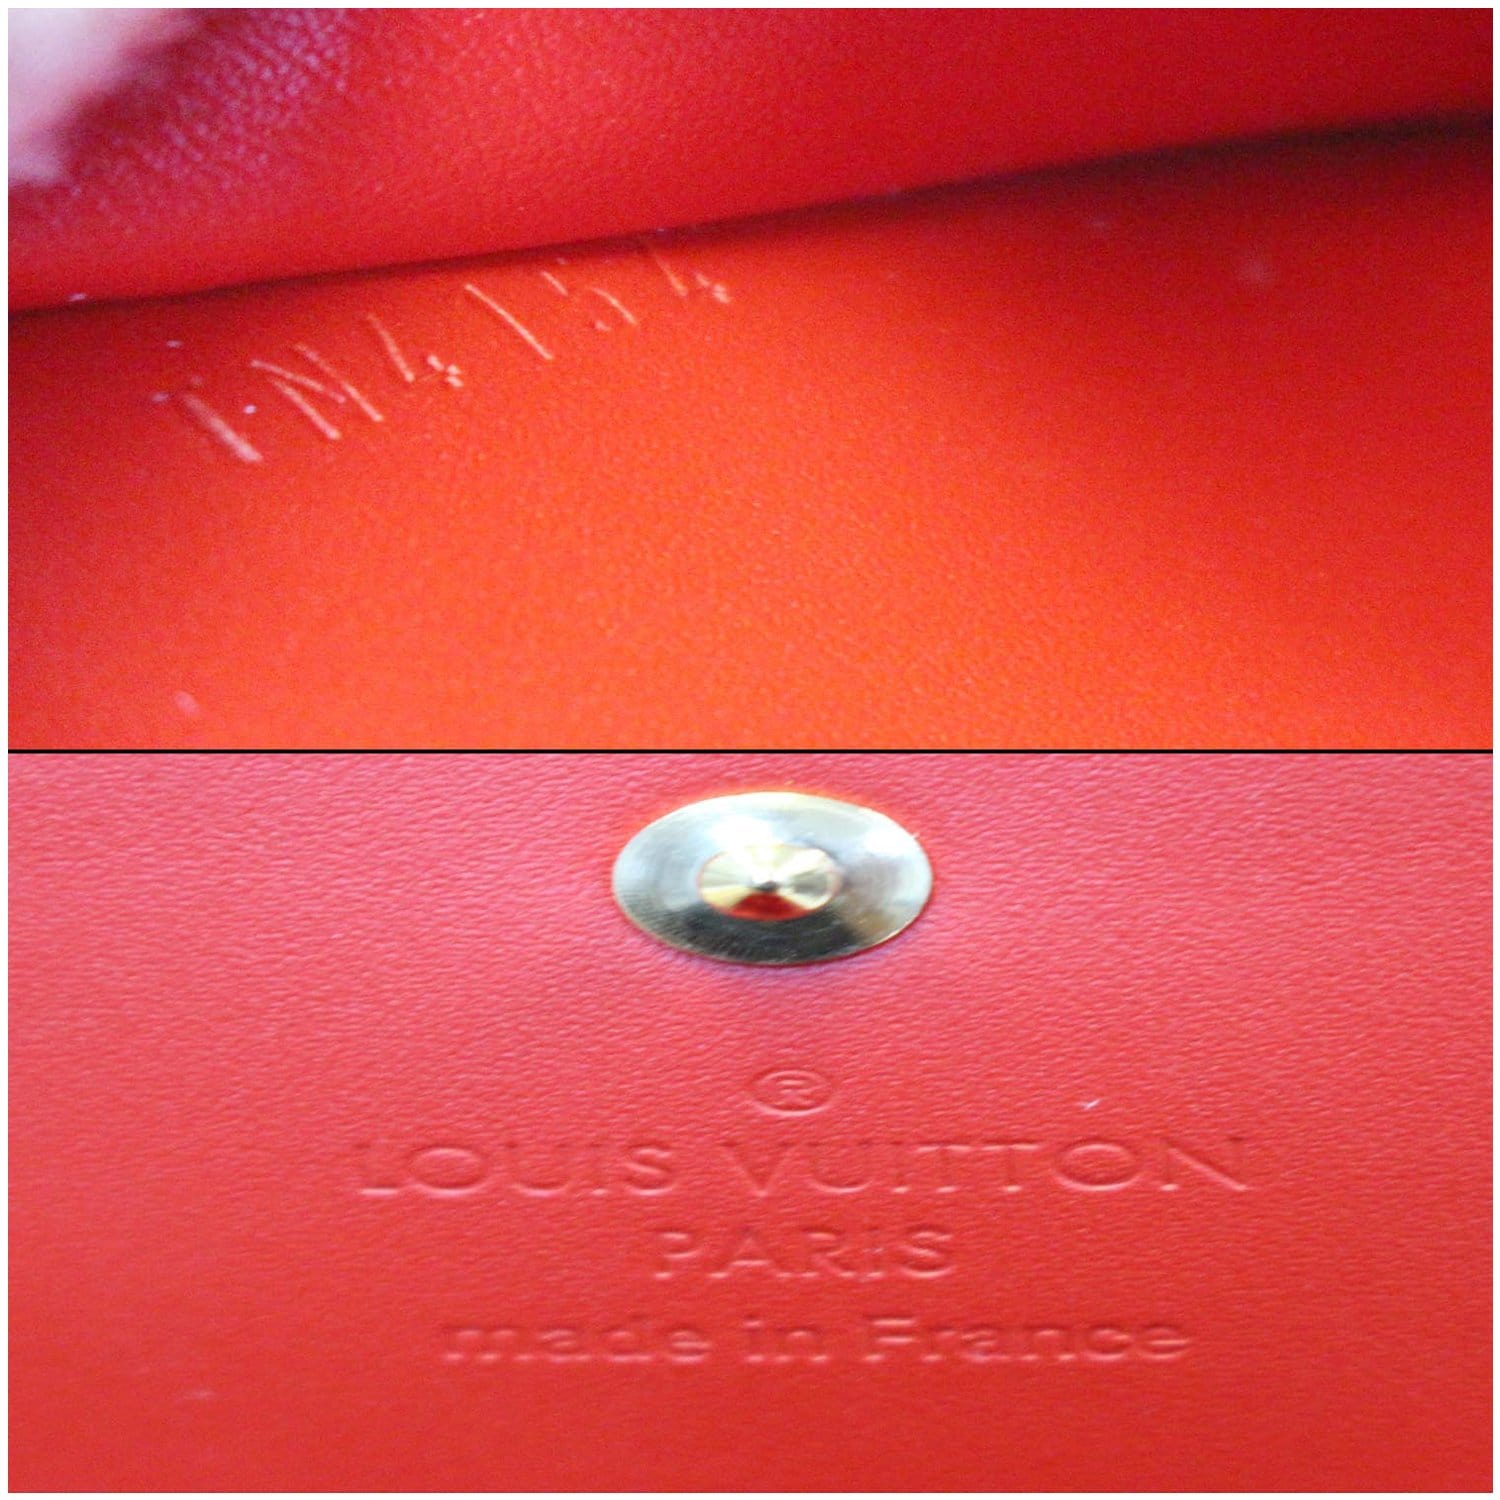 Louis Vuitton Vernis Sarah Wallet Blue Lagon — LSC INC